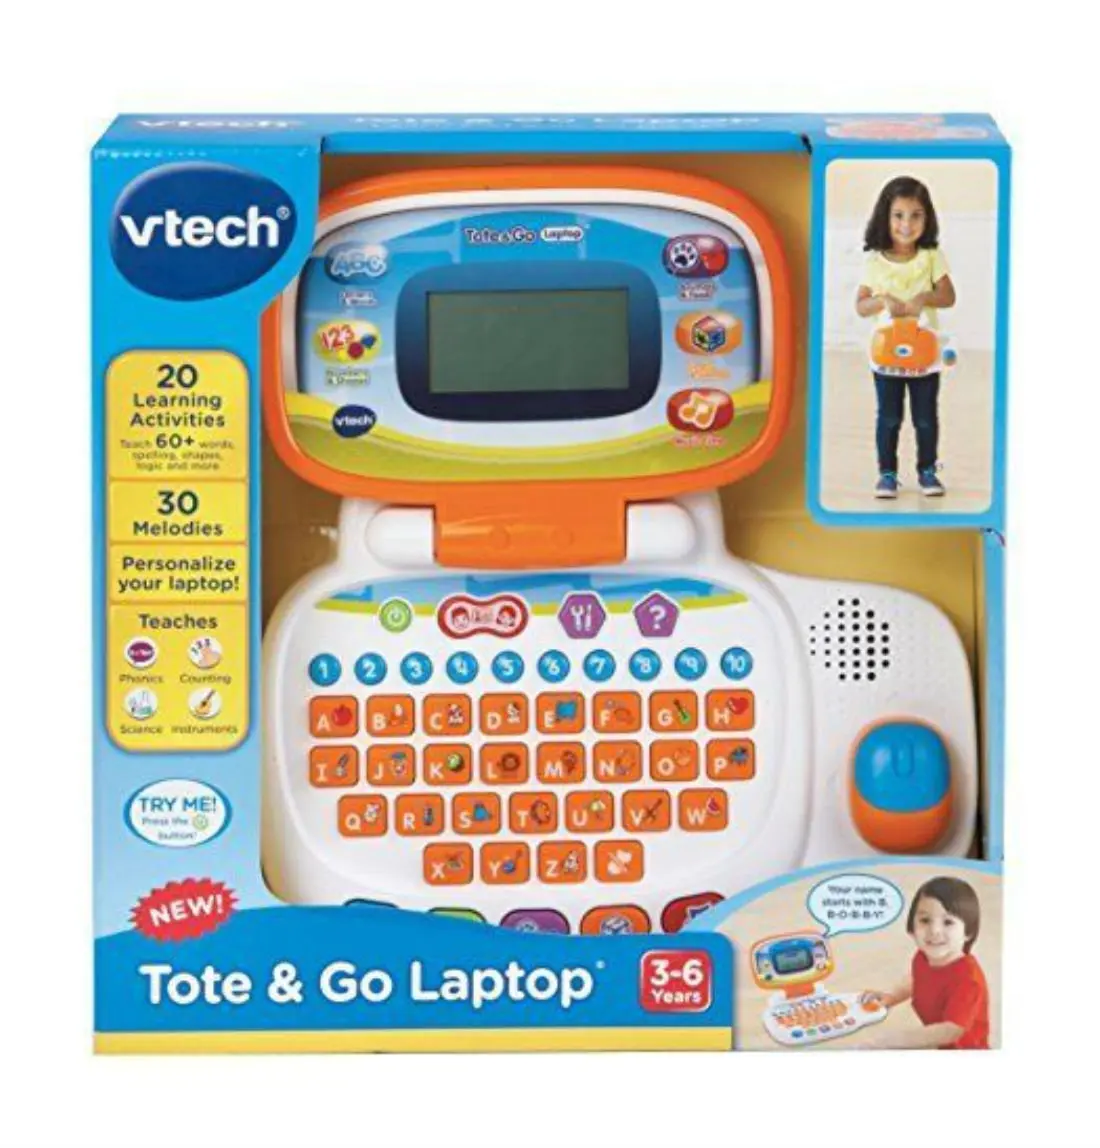 vtech children's learning laptop